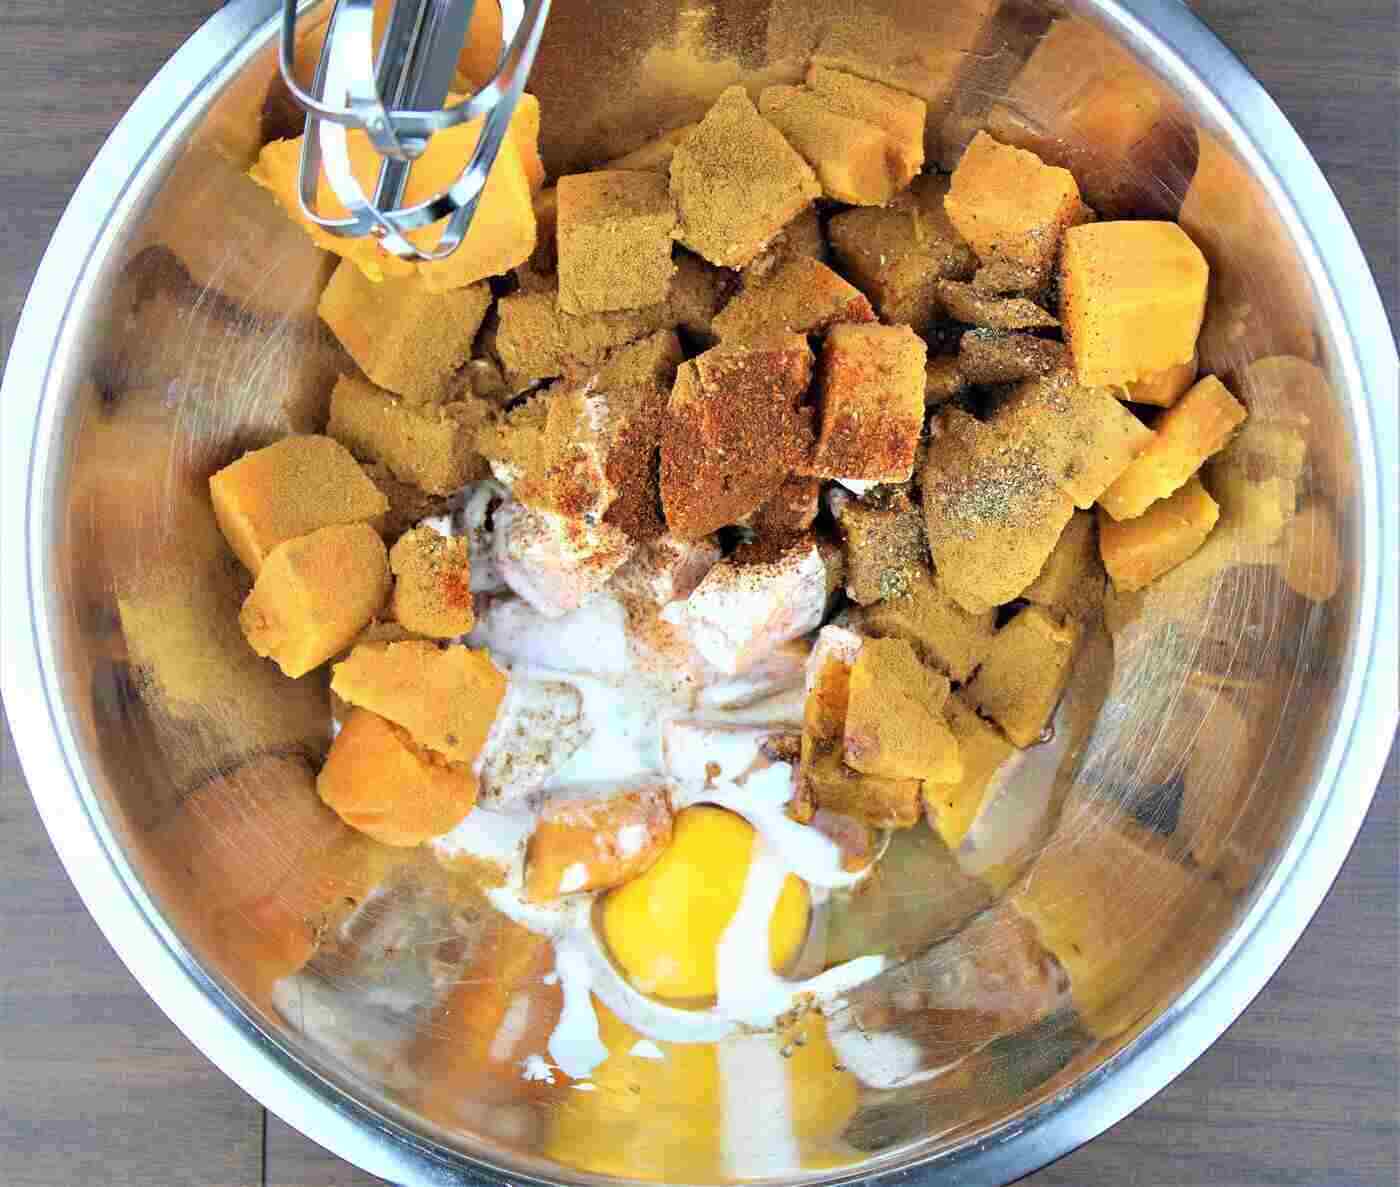 Ingrédients de la casserole de patates douces - Recette de la casserole de patates douces avec cayenne et croûte de noix de pécan